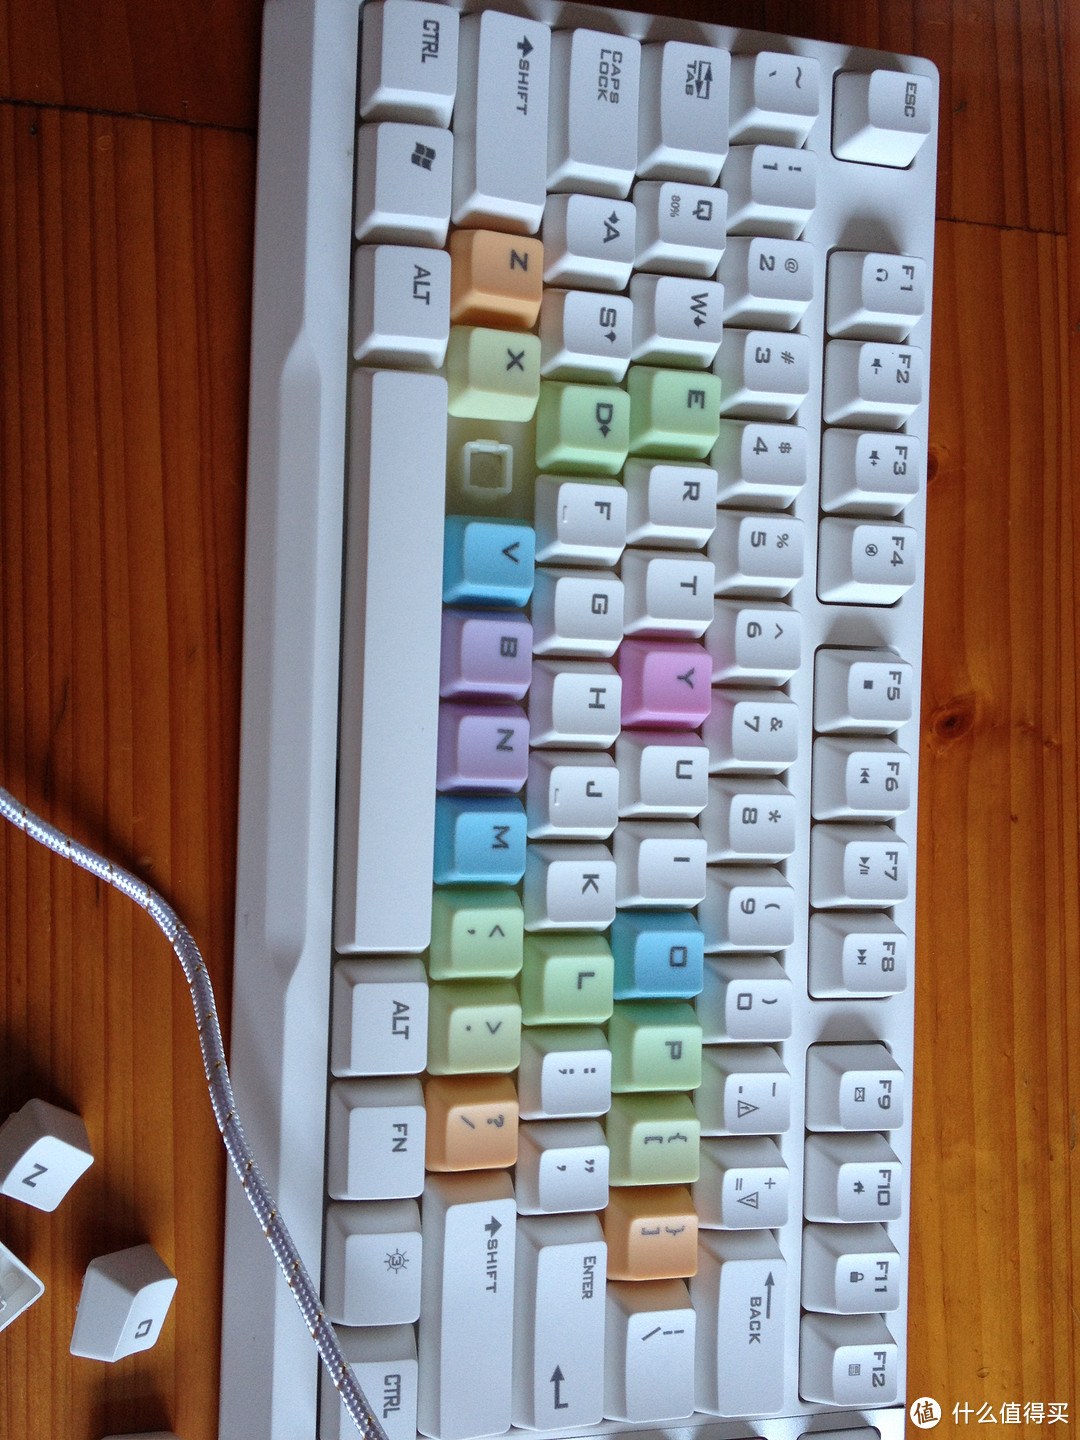 十九分之一——AJazz 黑爵 AK10 英魂之刃 键盘 白色彩虹版